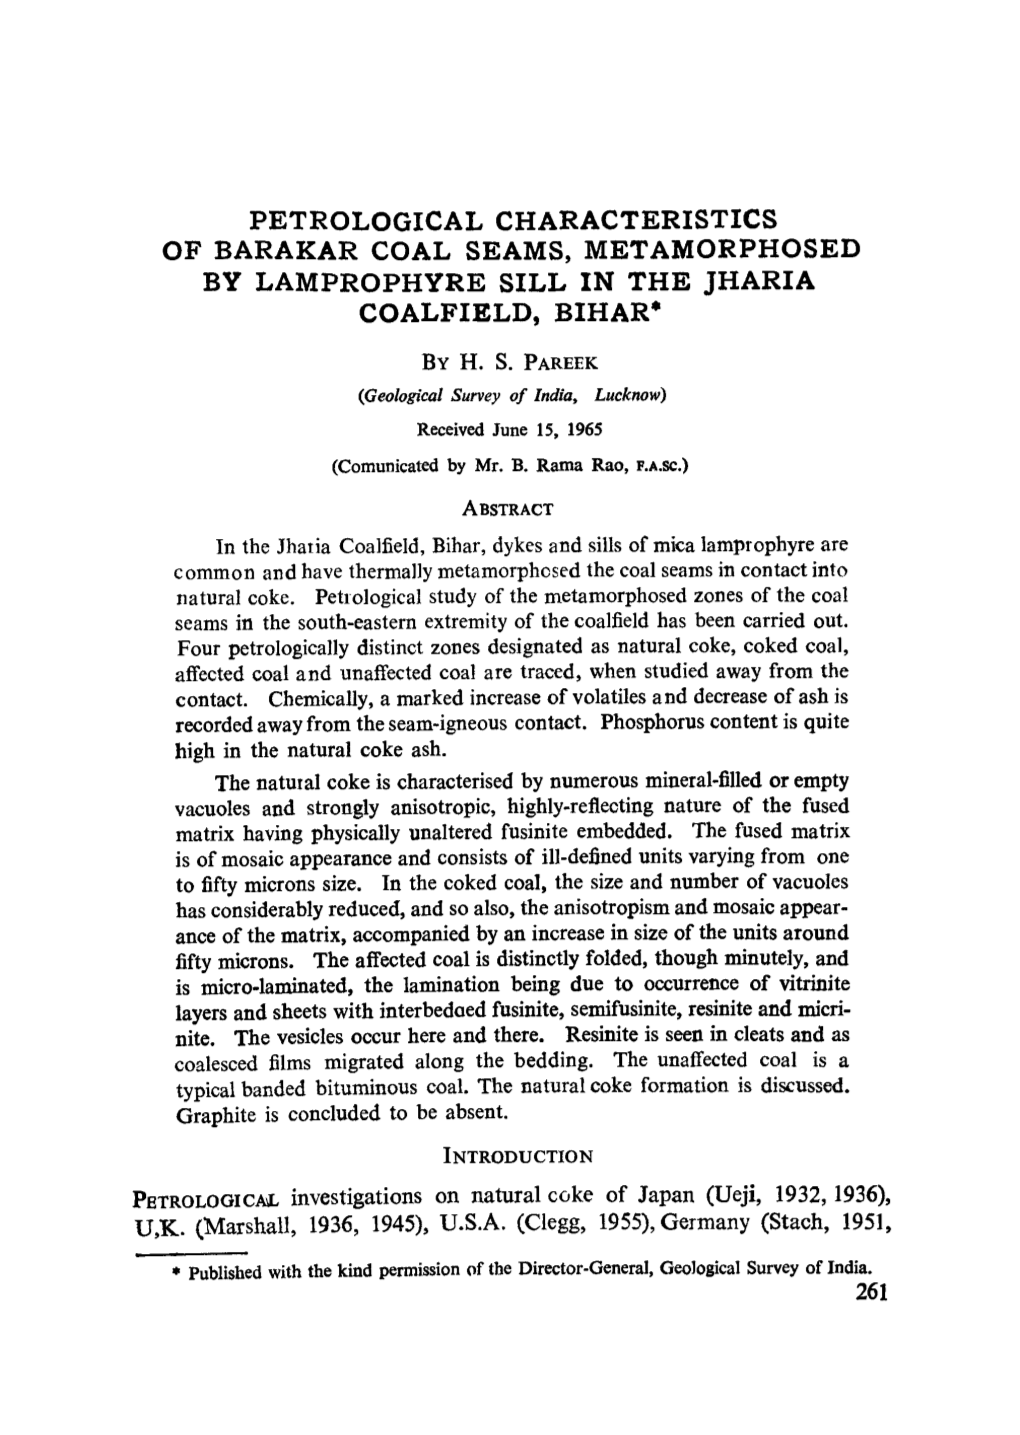 Petrological Characteristics of Barakar Coal Seams, Metamorphosed by Lamprophyre Sill in the Jharia Coalfield, Bihar*